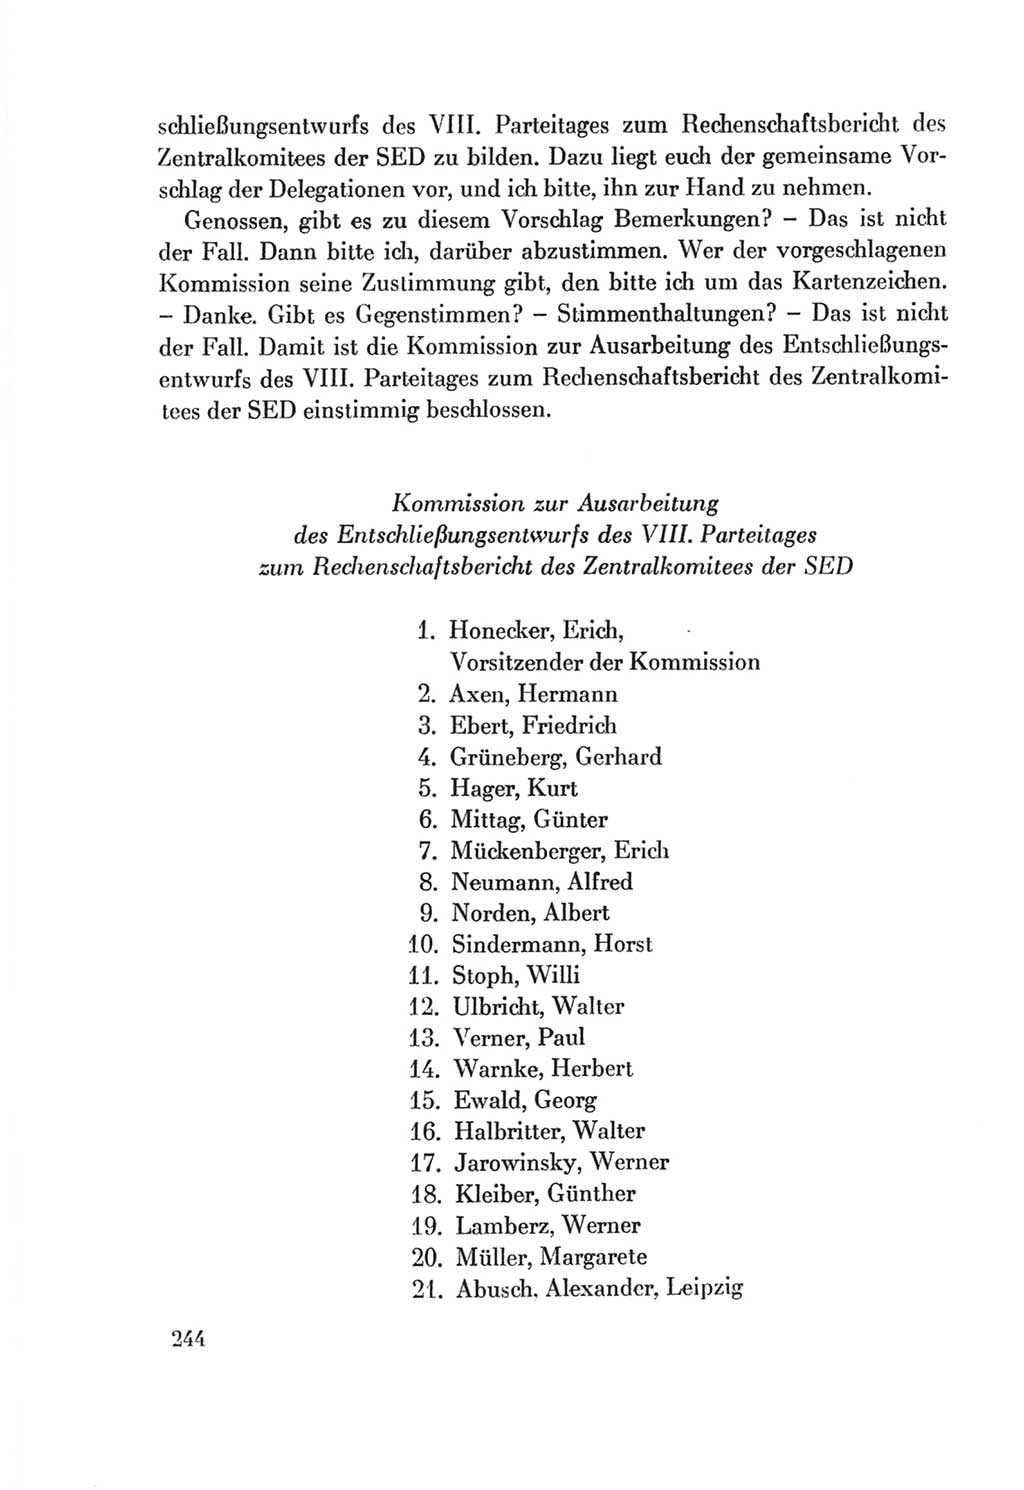 Protokoll der Verhandlungen des Ⅷ. Parteitages der Sozialistischen Einheitspartei Deutschlands (SED) [Deutsche Demokratische Republik (DDR)] 1971, Band 1, Seite 244 (Prot. Verh. Ⅷ. PT SED DDR 1971, Bd. 1, S. 244)